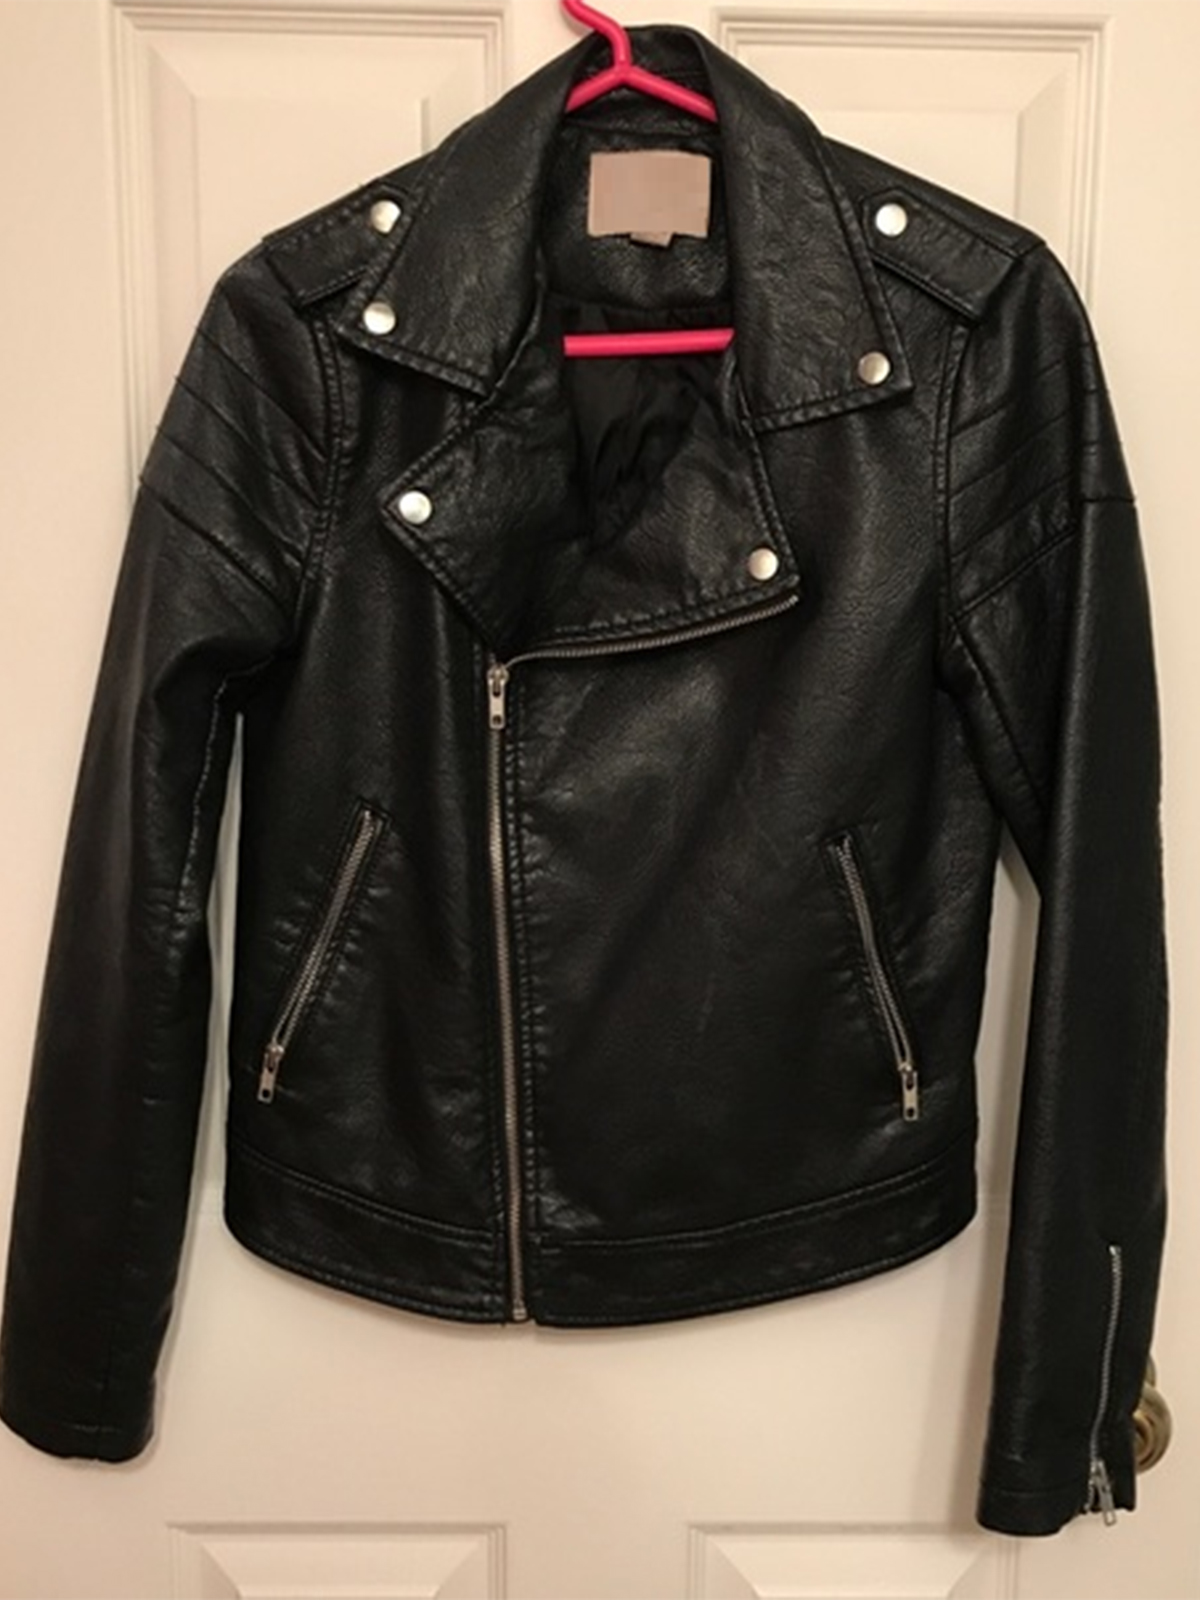 Forever 21 Black Leather Jacket